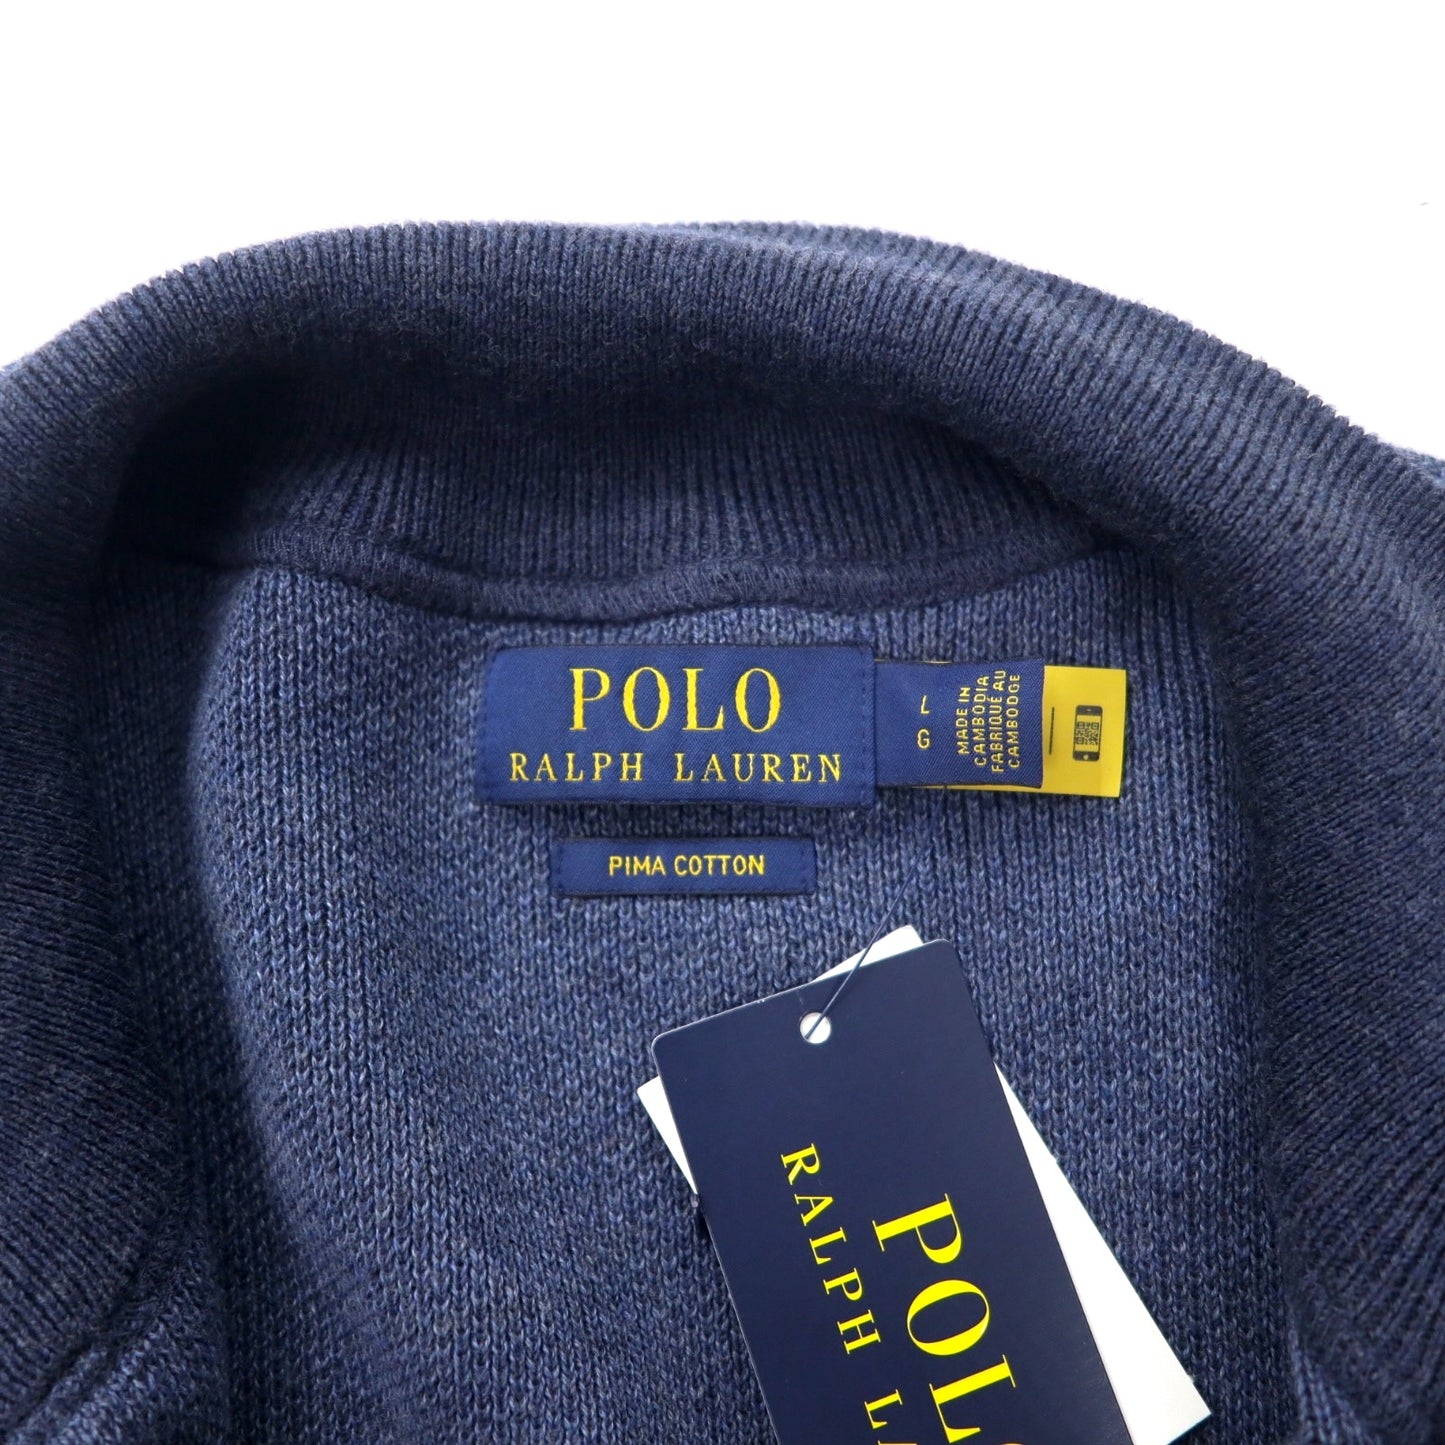 POLO RALPH LAUREN ピマコットン フルジップ ニット セーター L ネイビー スモールポニー刺繍 未使用品